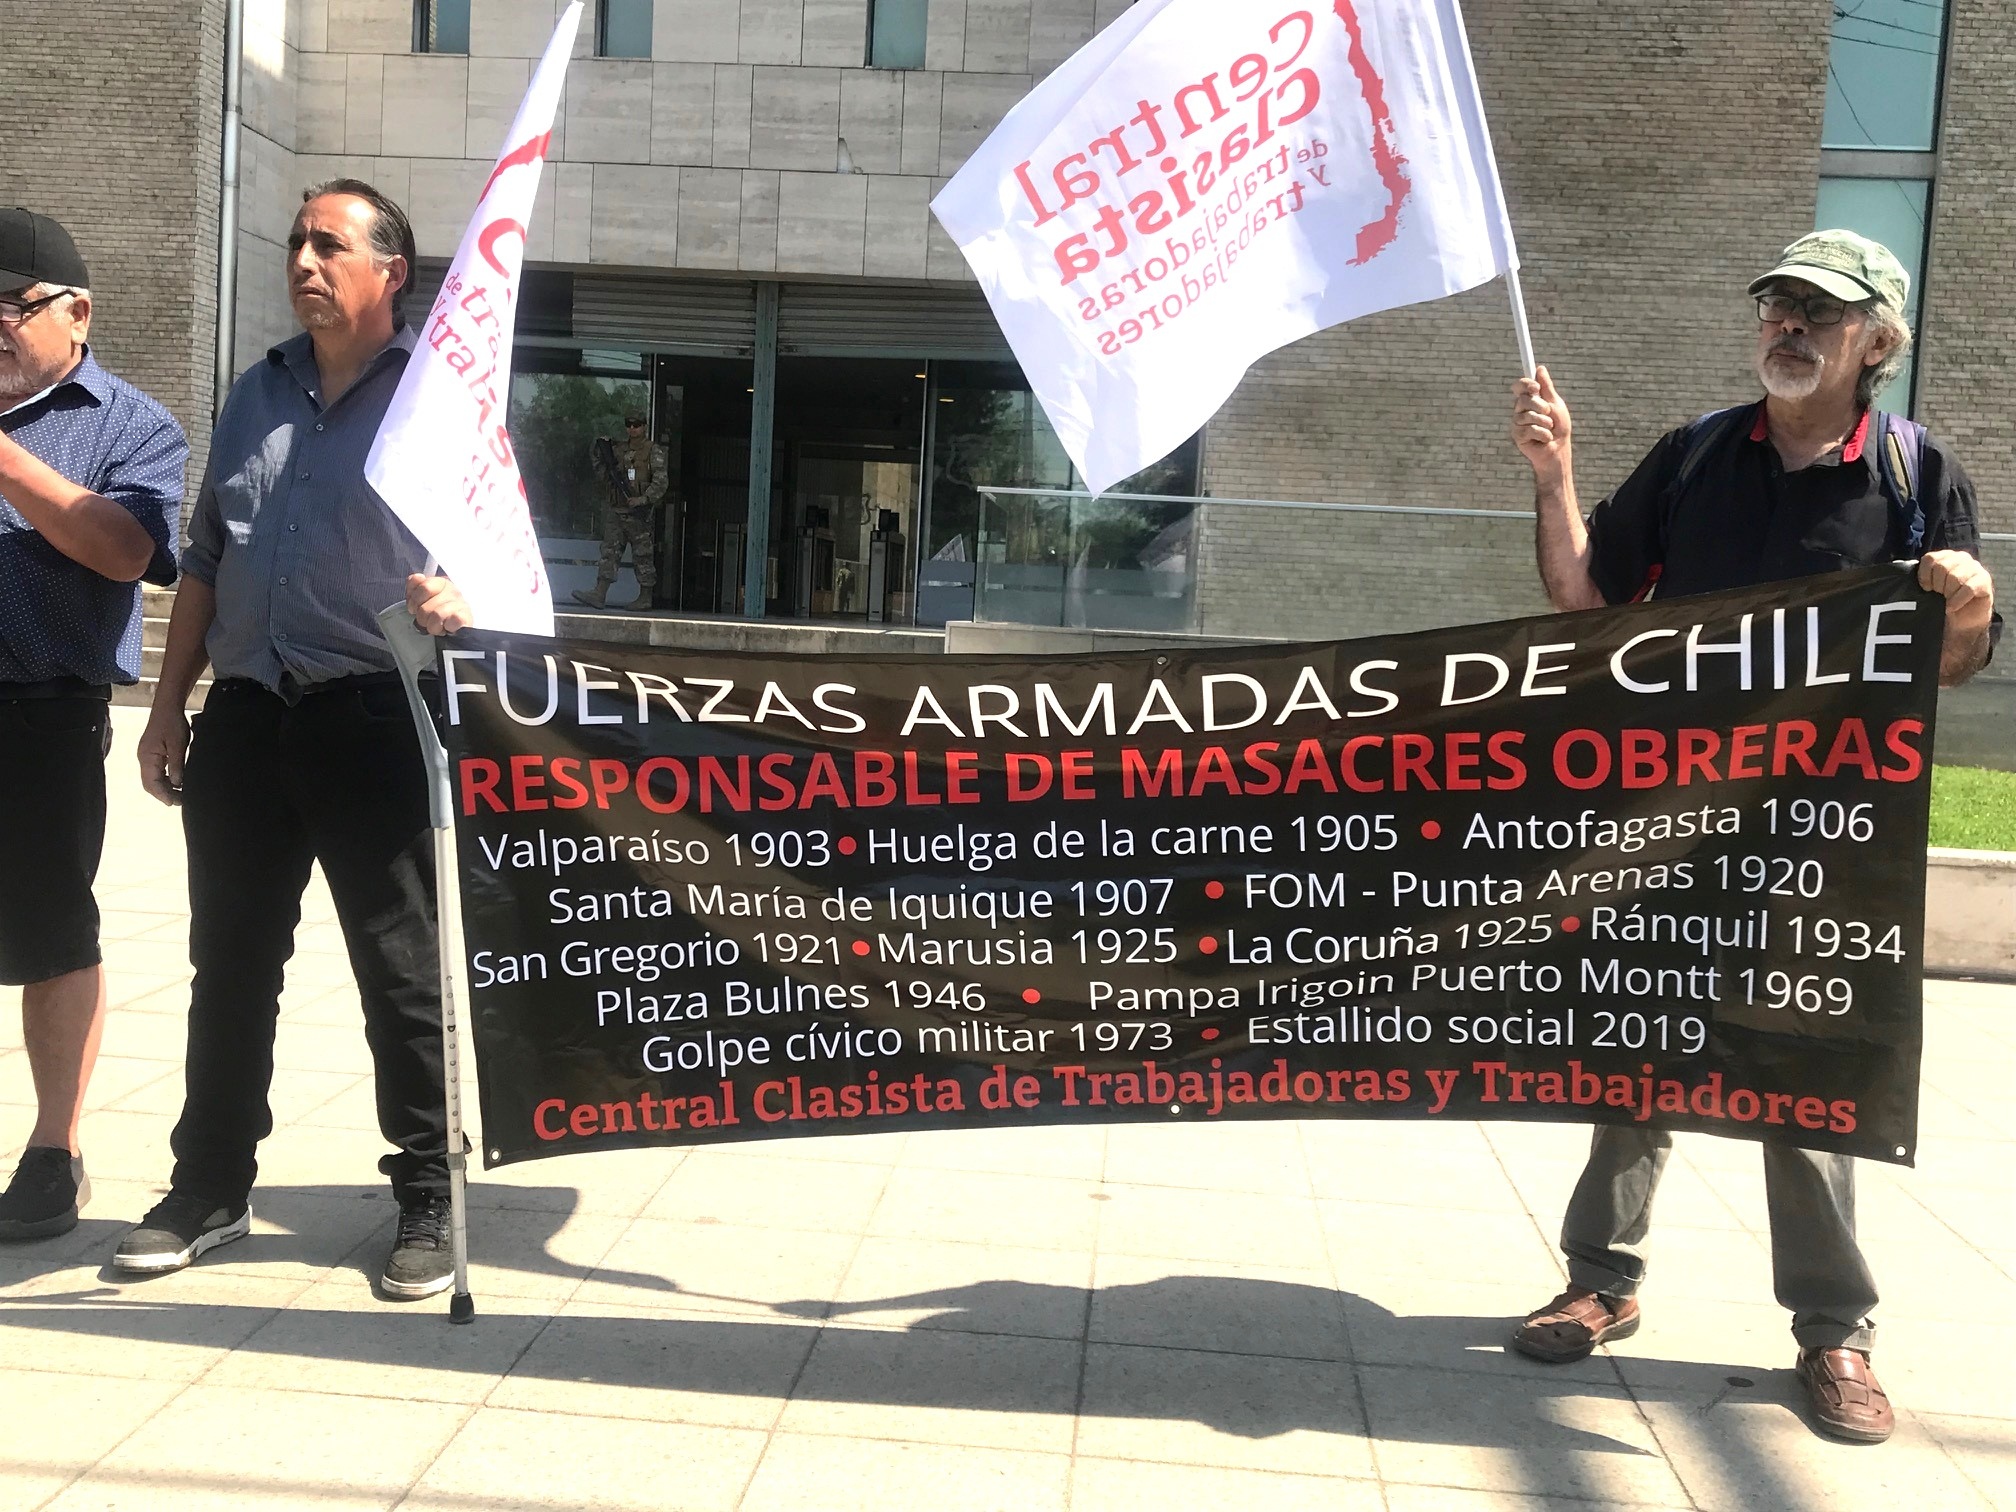  116 años desde la matanza de la Escuela Santa María de Iquique: Sindicalistas realizan plantón en la Comandancia en Jefe del Ejército